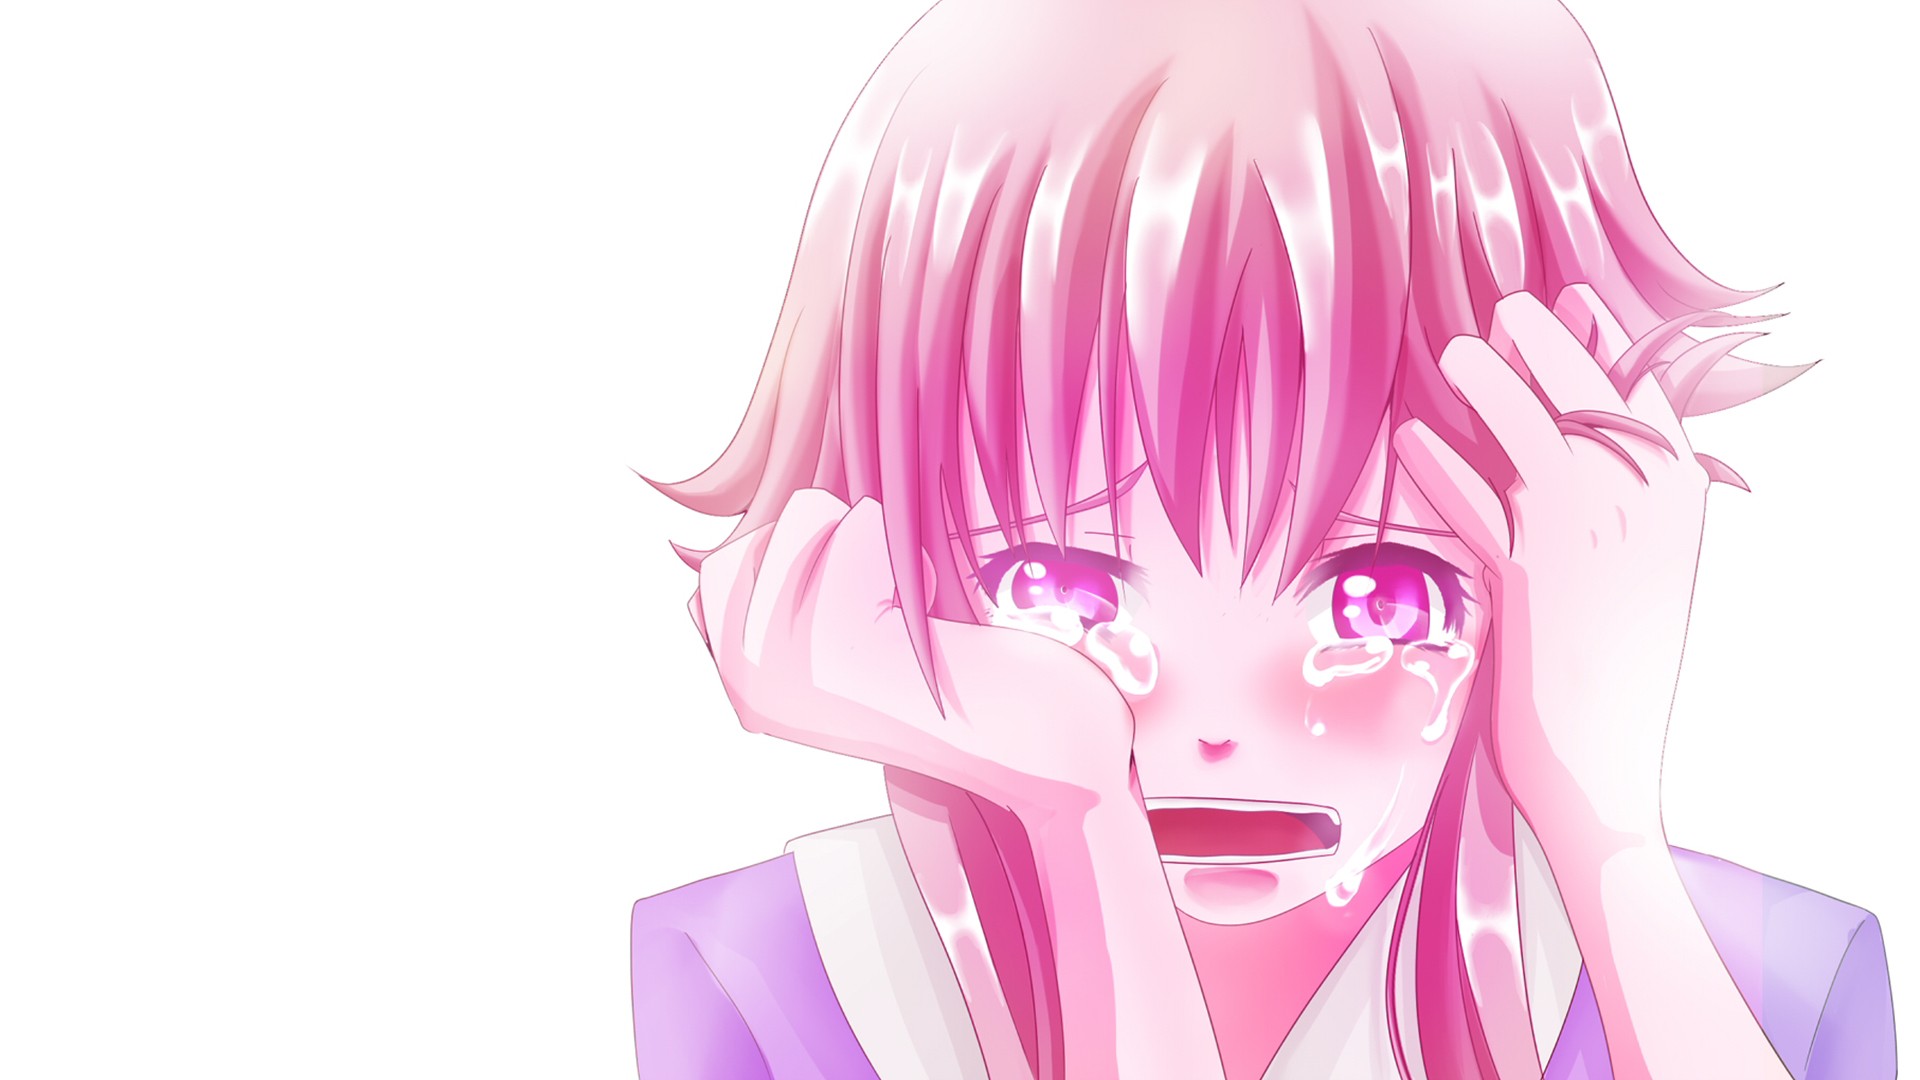 Anime Animegirl Crying Sadness Despair Tears Anime Girls Clip